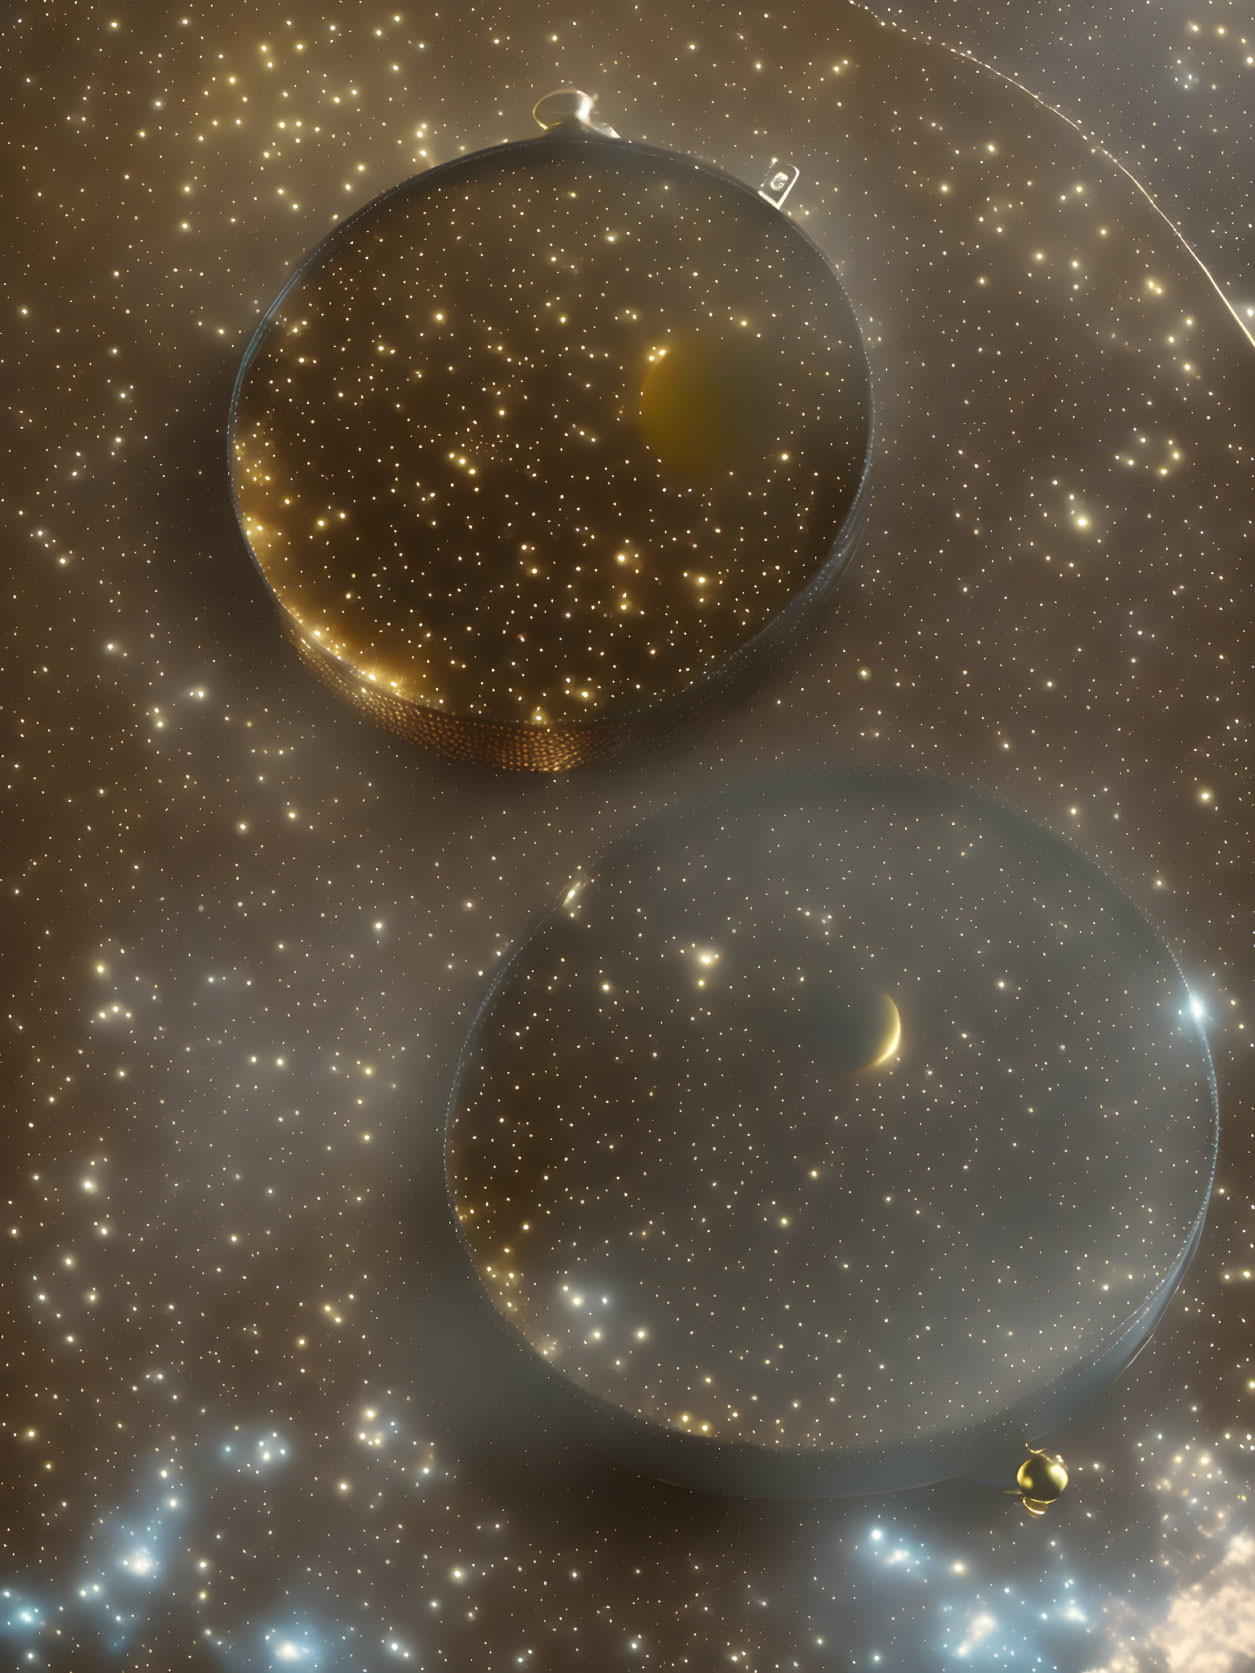 Transparent spheres in cosmic digital artwork